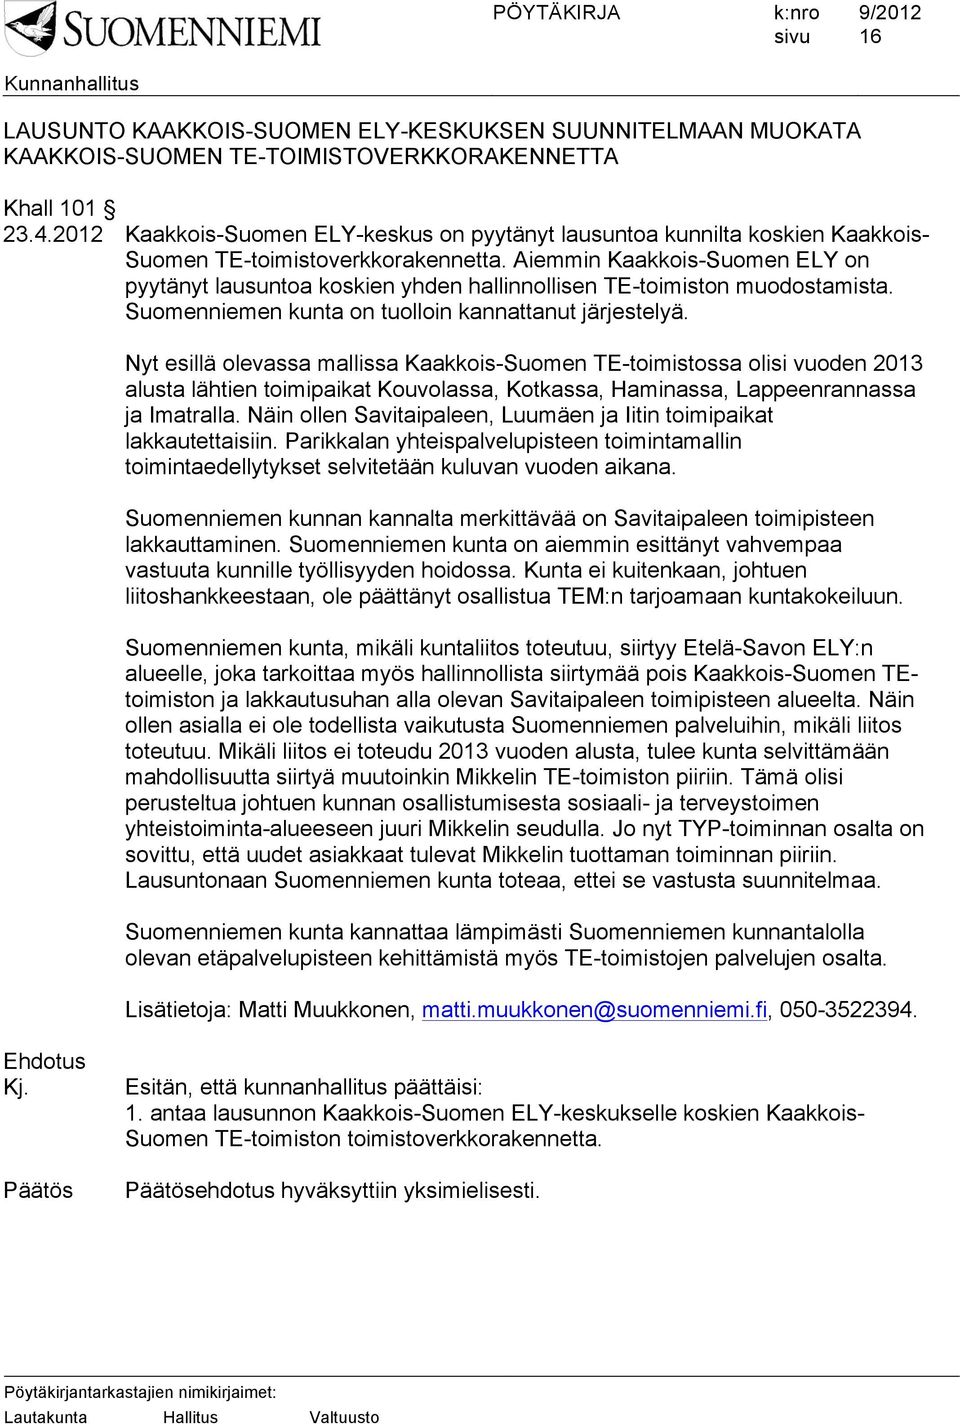 Aiemmin Kaakkois-Suomen ELY on pyytänyt lausuntoa koskien yhden hallinnollisen TE-toimiston muodostamista. Suomenniemen kunta on tuolloin kannattanut järjestelyä.